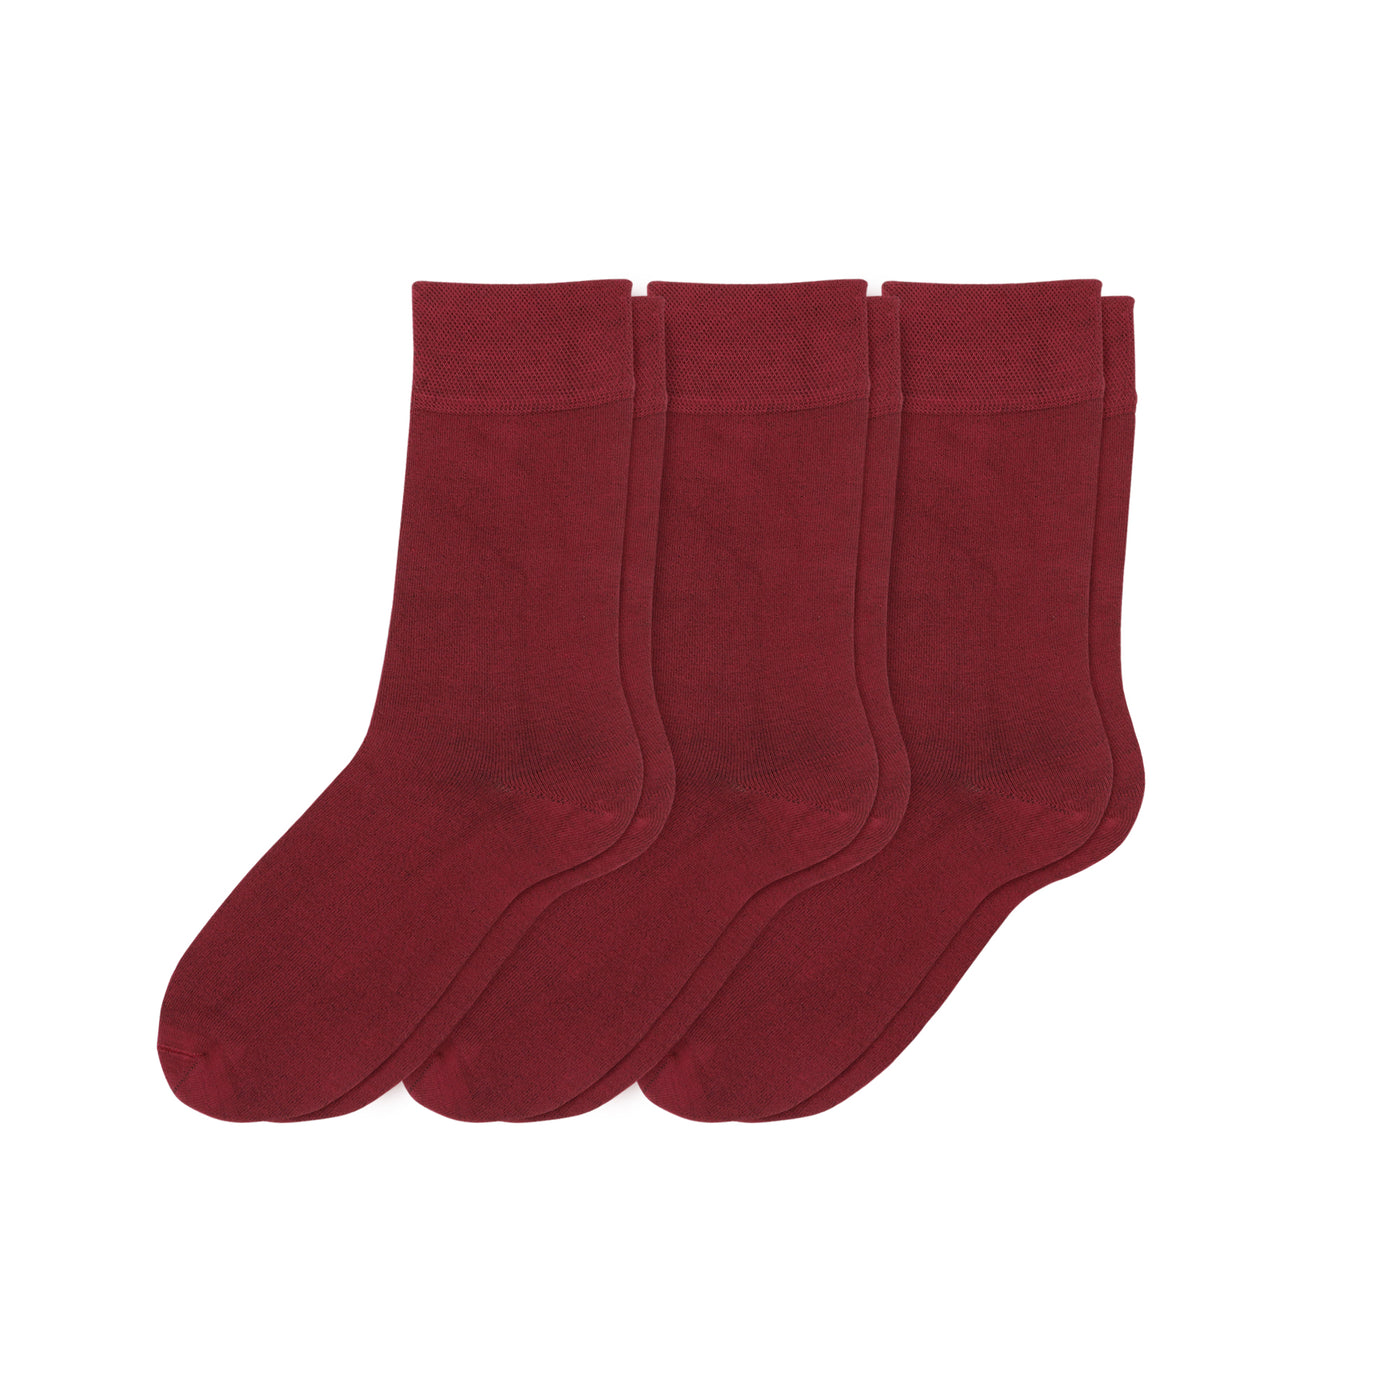 Elyfer-Socks-Burgundy-Bamboo-Crew-Socks-for-Women #color_burgundy